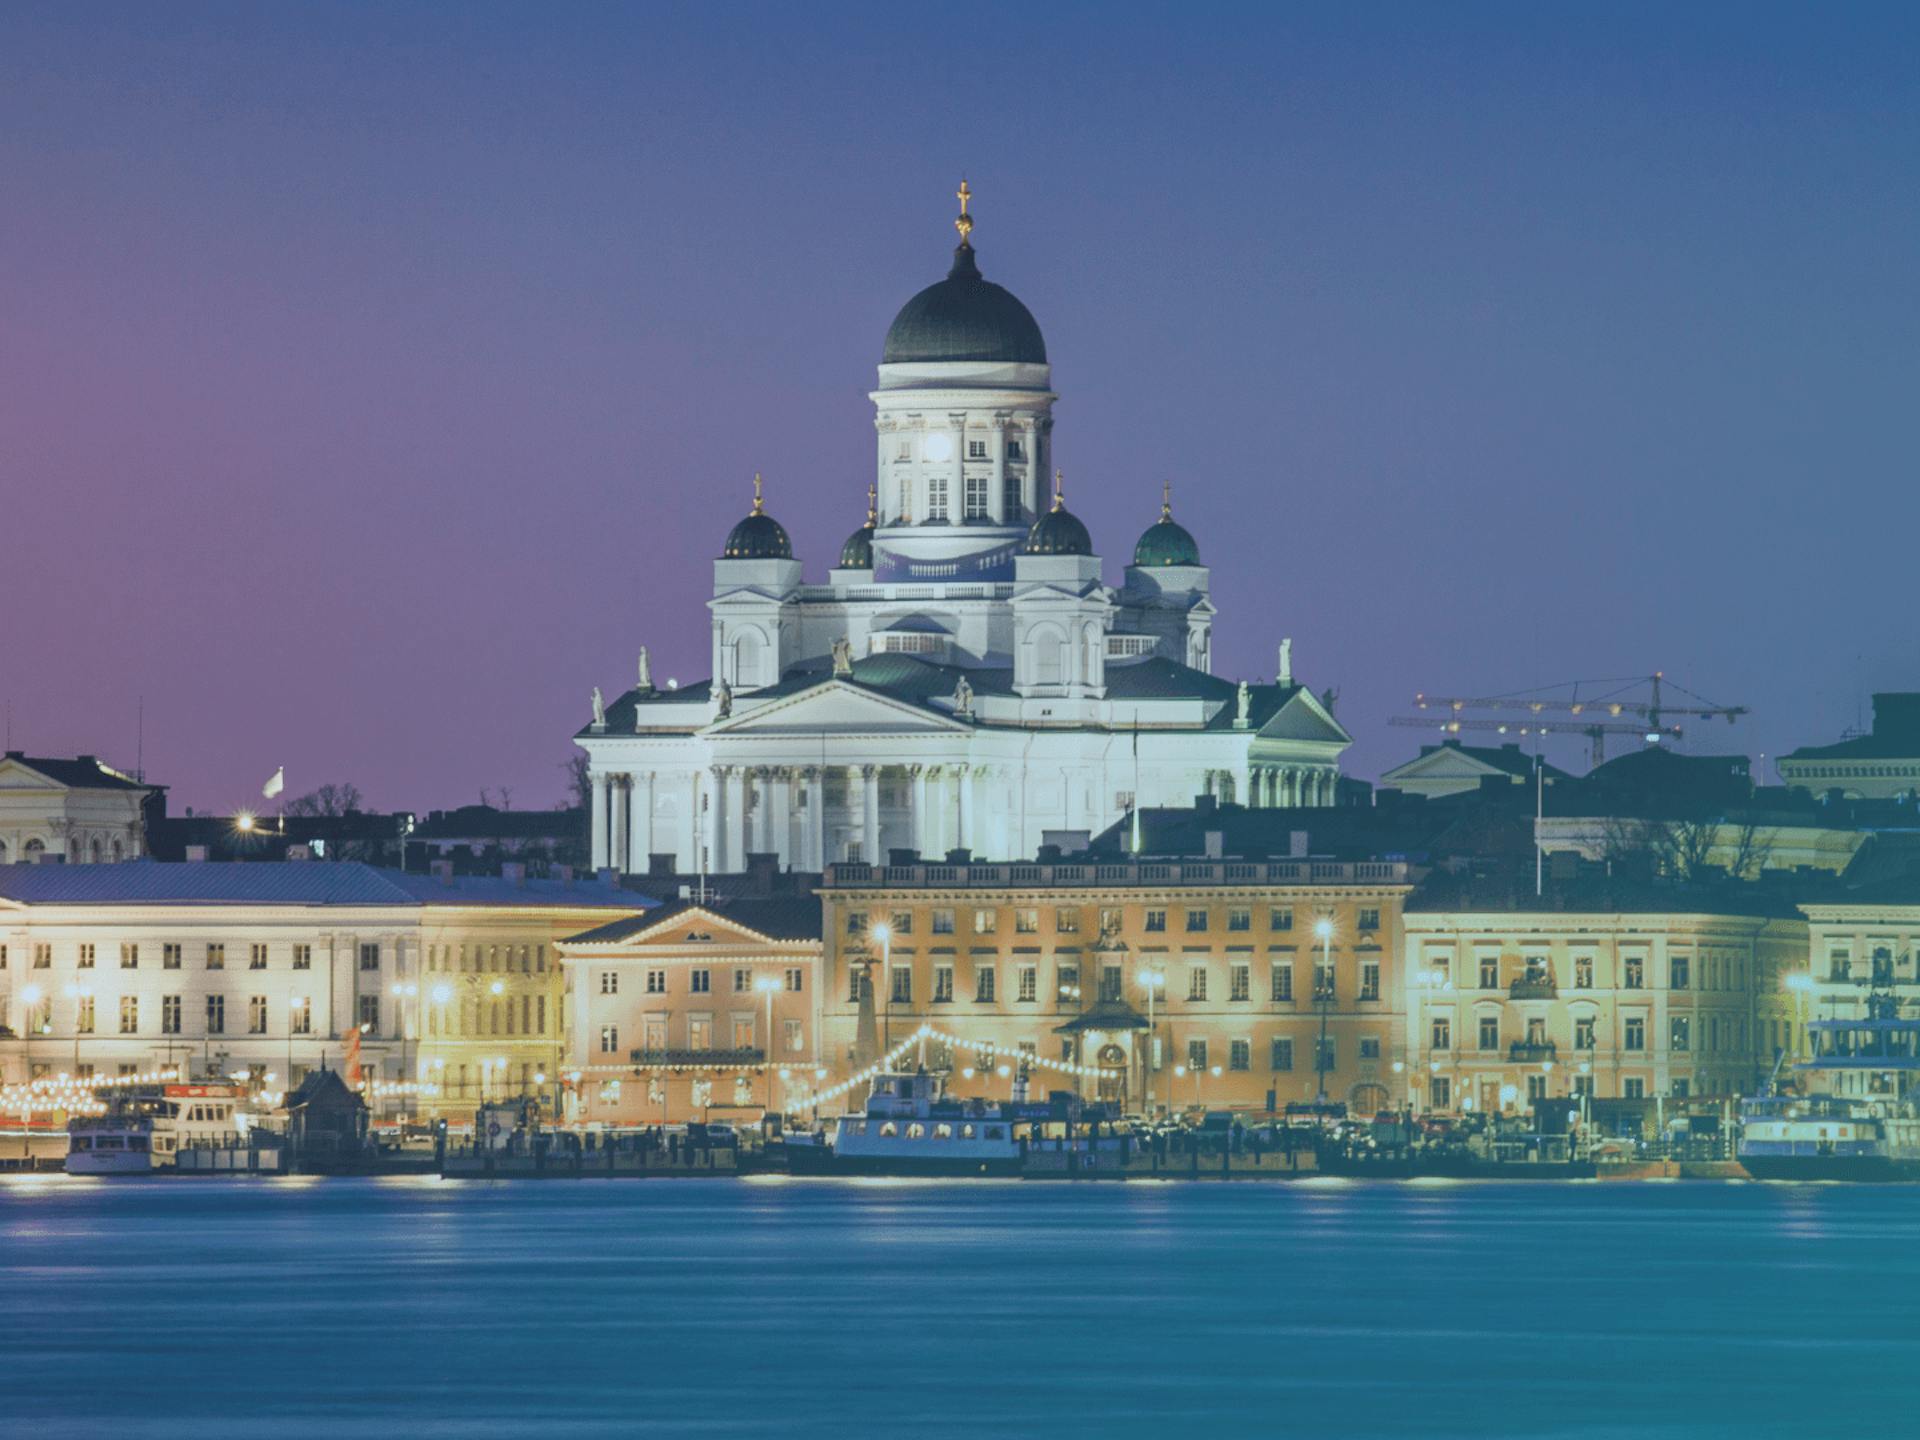 Finlandiya'nın başkenti Helsinki, ülkenin güney kıyısında Finlandiya Körfezi boyunca yer almaktadır.